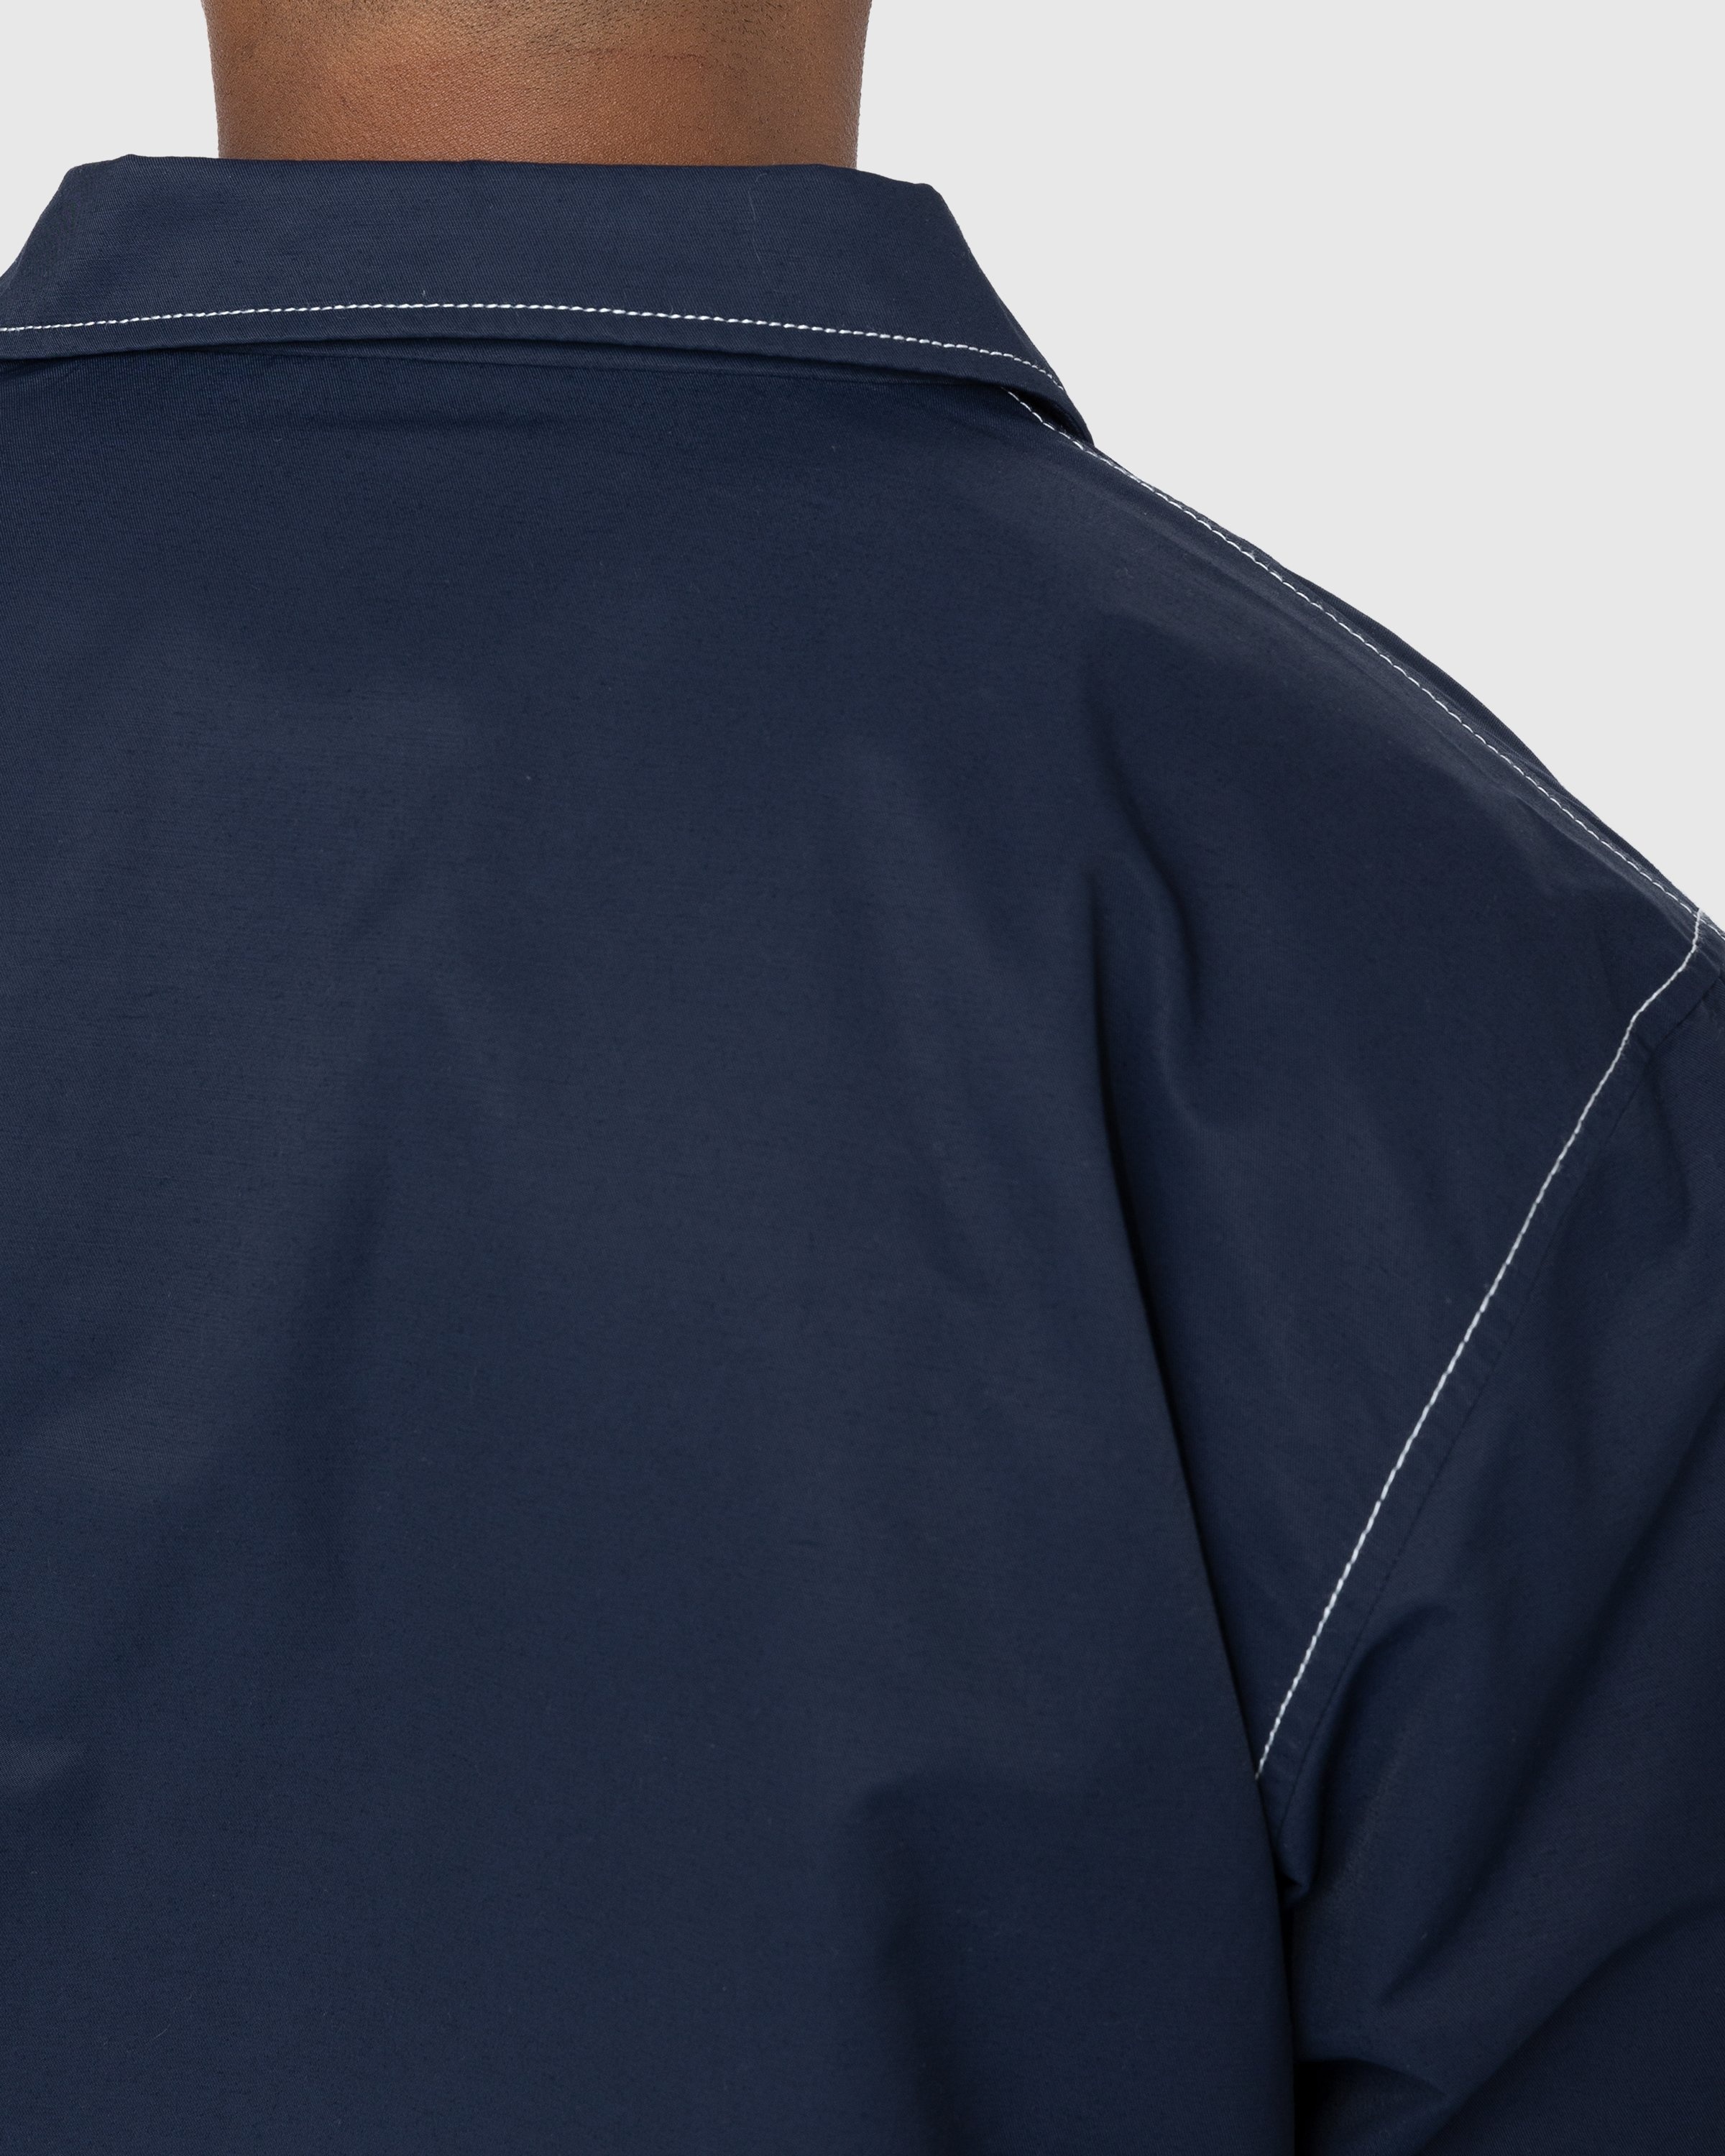 Highsnobiety – Brushed Nylon Jacket Navy - Outerwear - Blue - Image 5